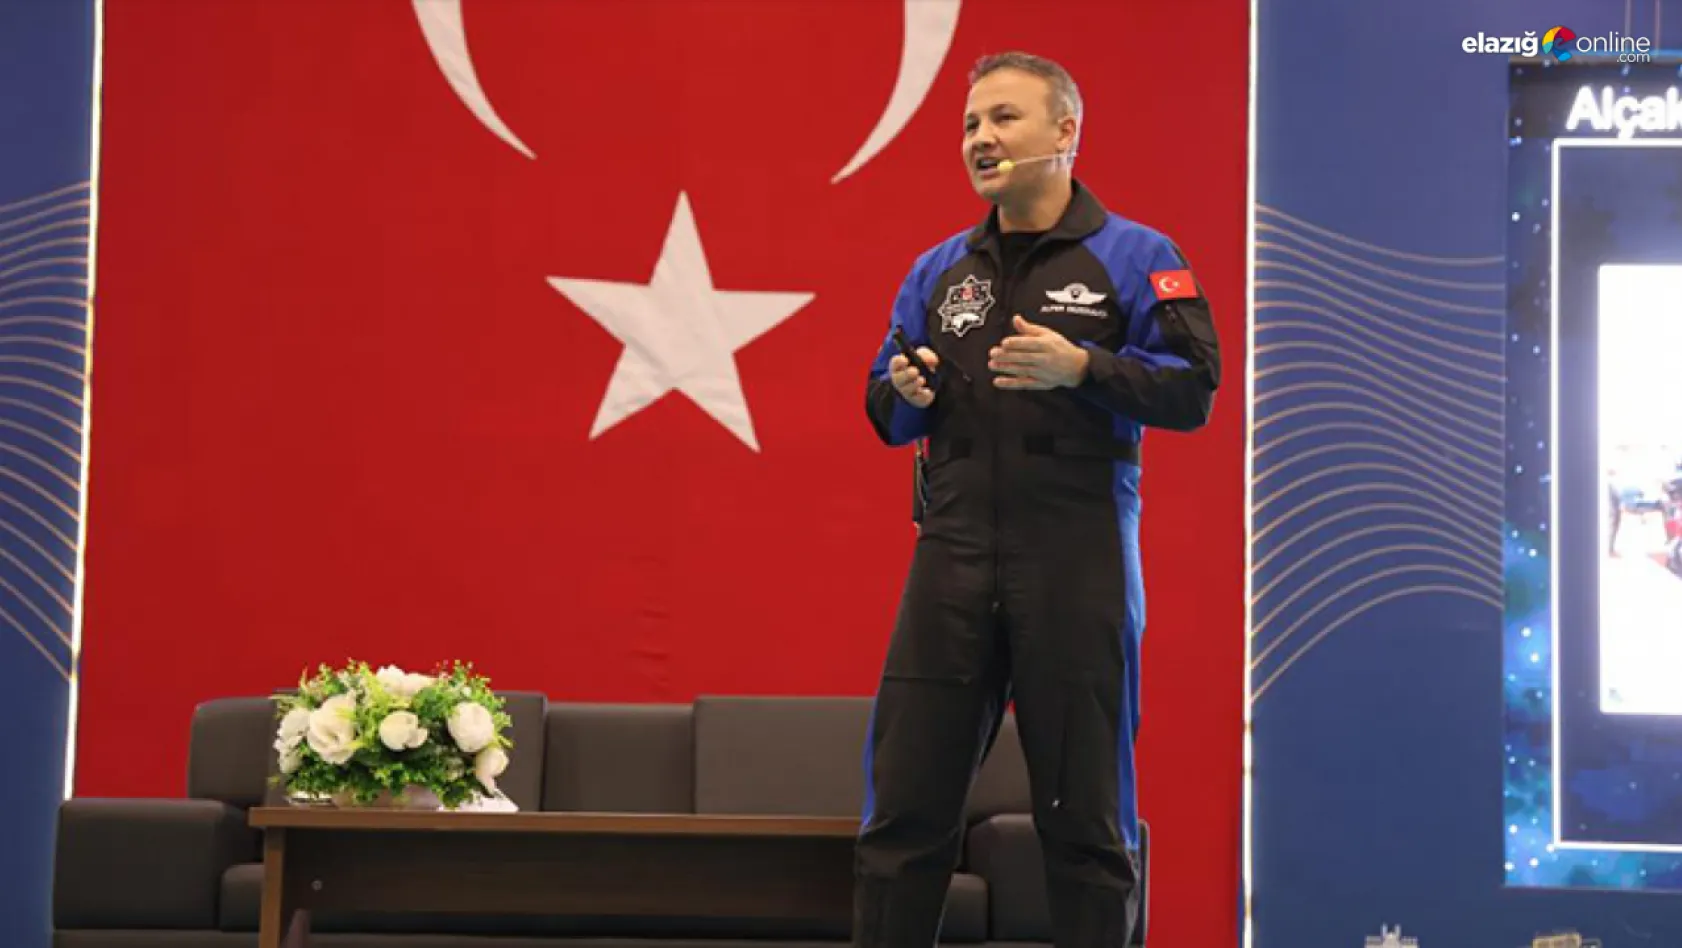 İlk Türk astronot Alper Gezeravcı Elazığ'da!